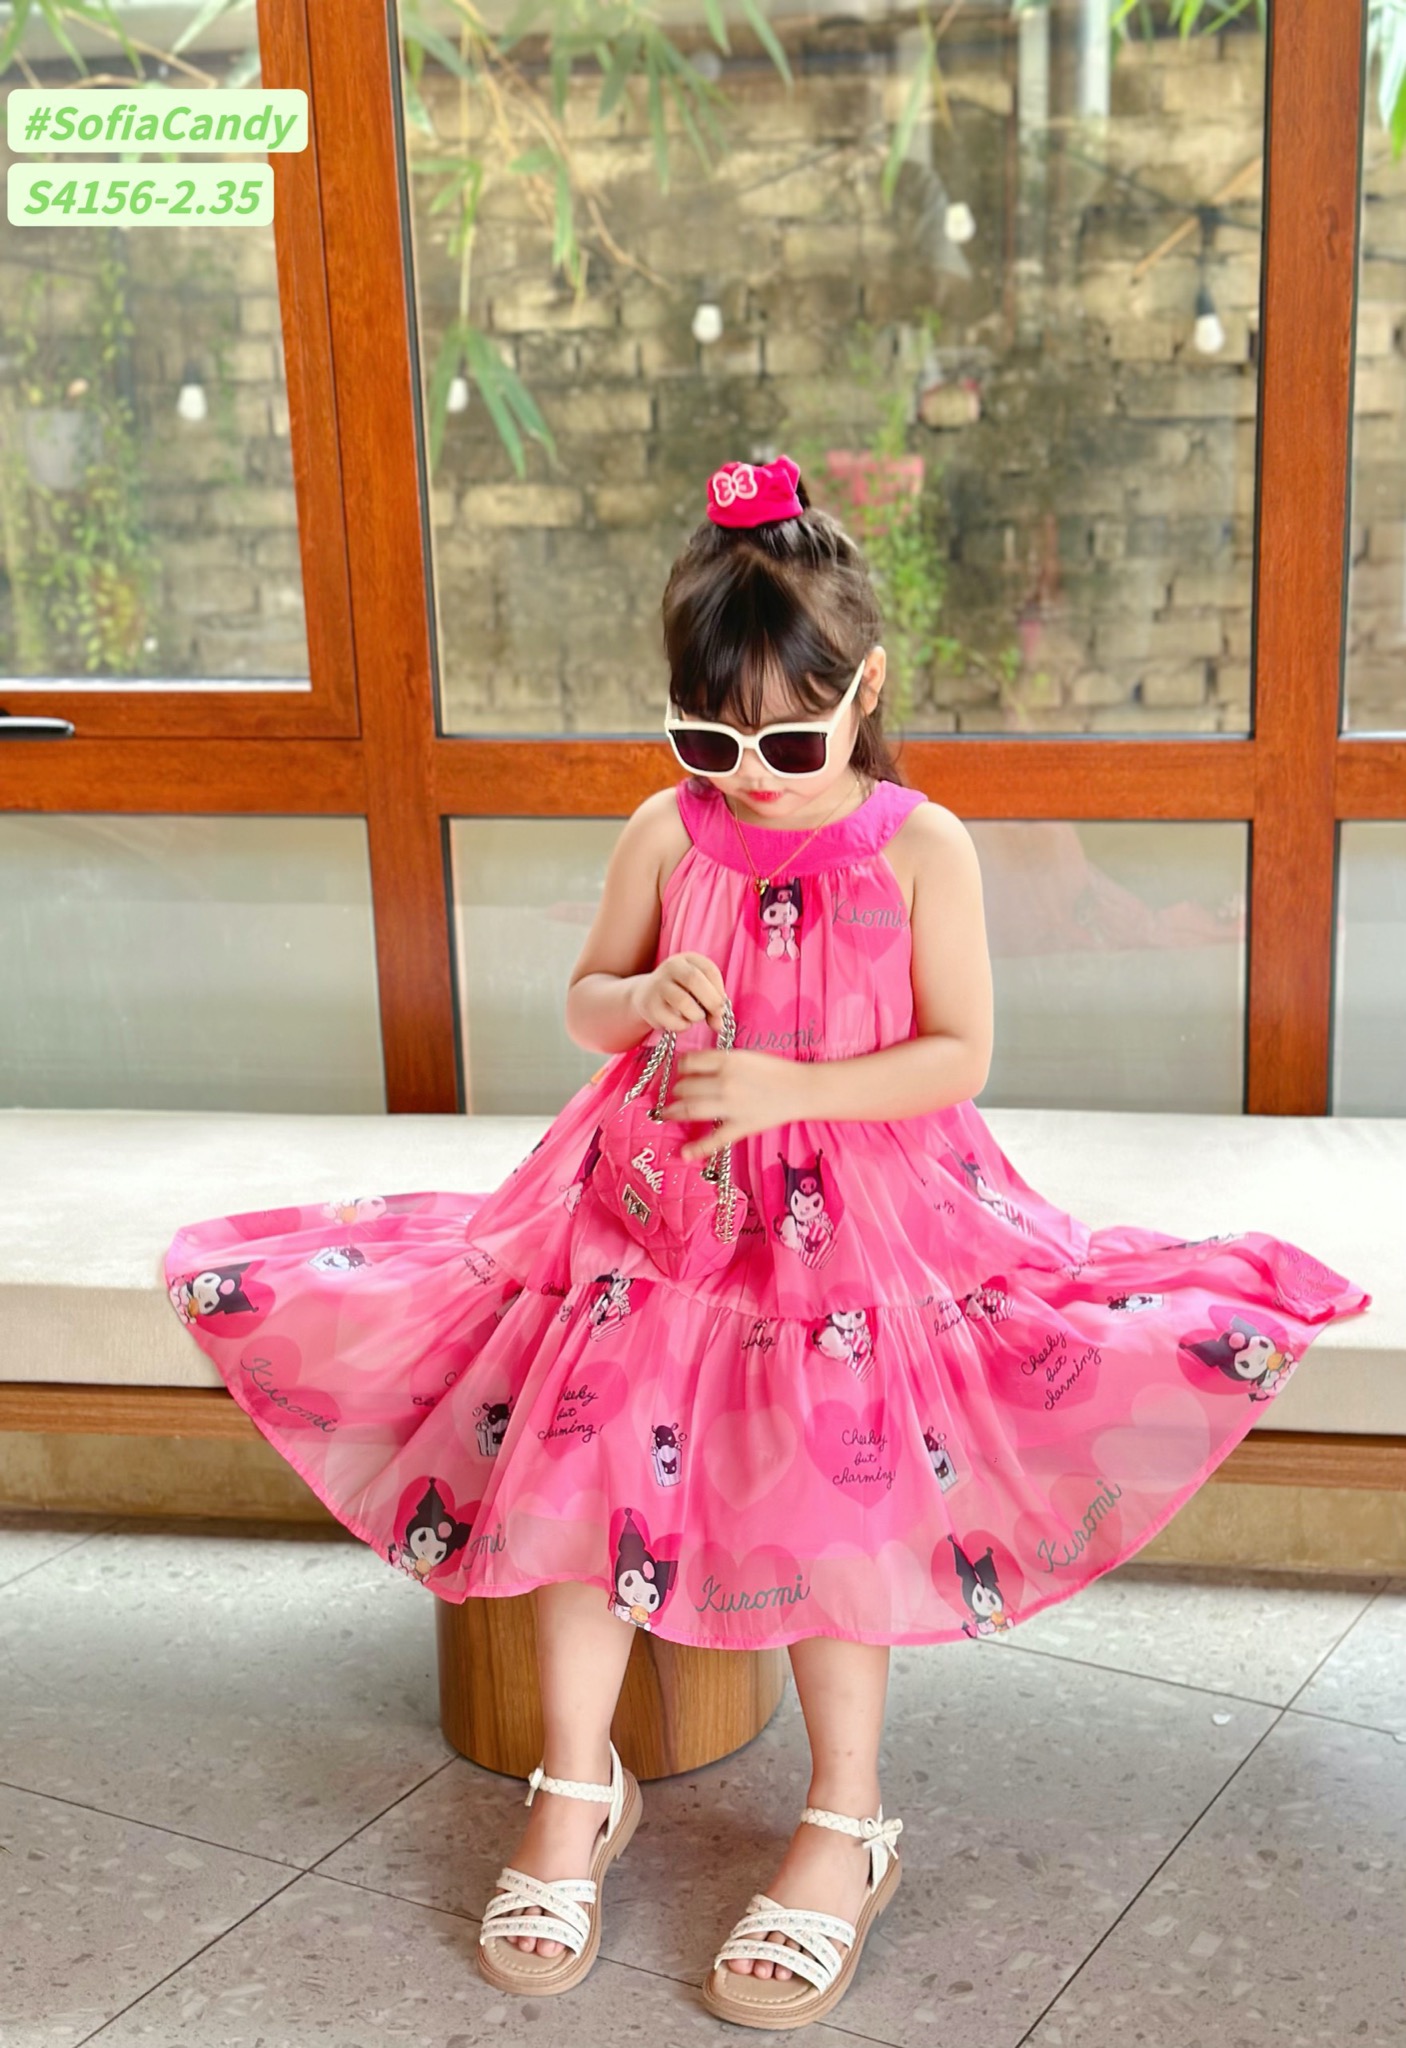 S4156 - Váy Sofia Candy vải tơ kuromi 2 màu hồng/tím in tràn cổ yếm size 1-10y